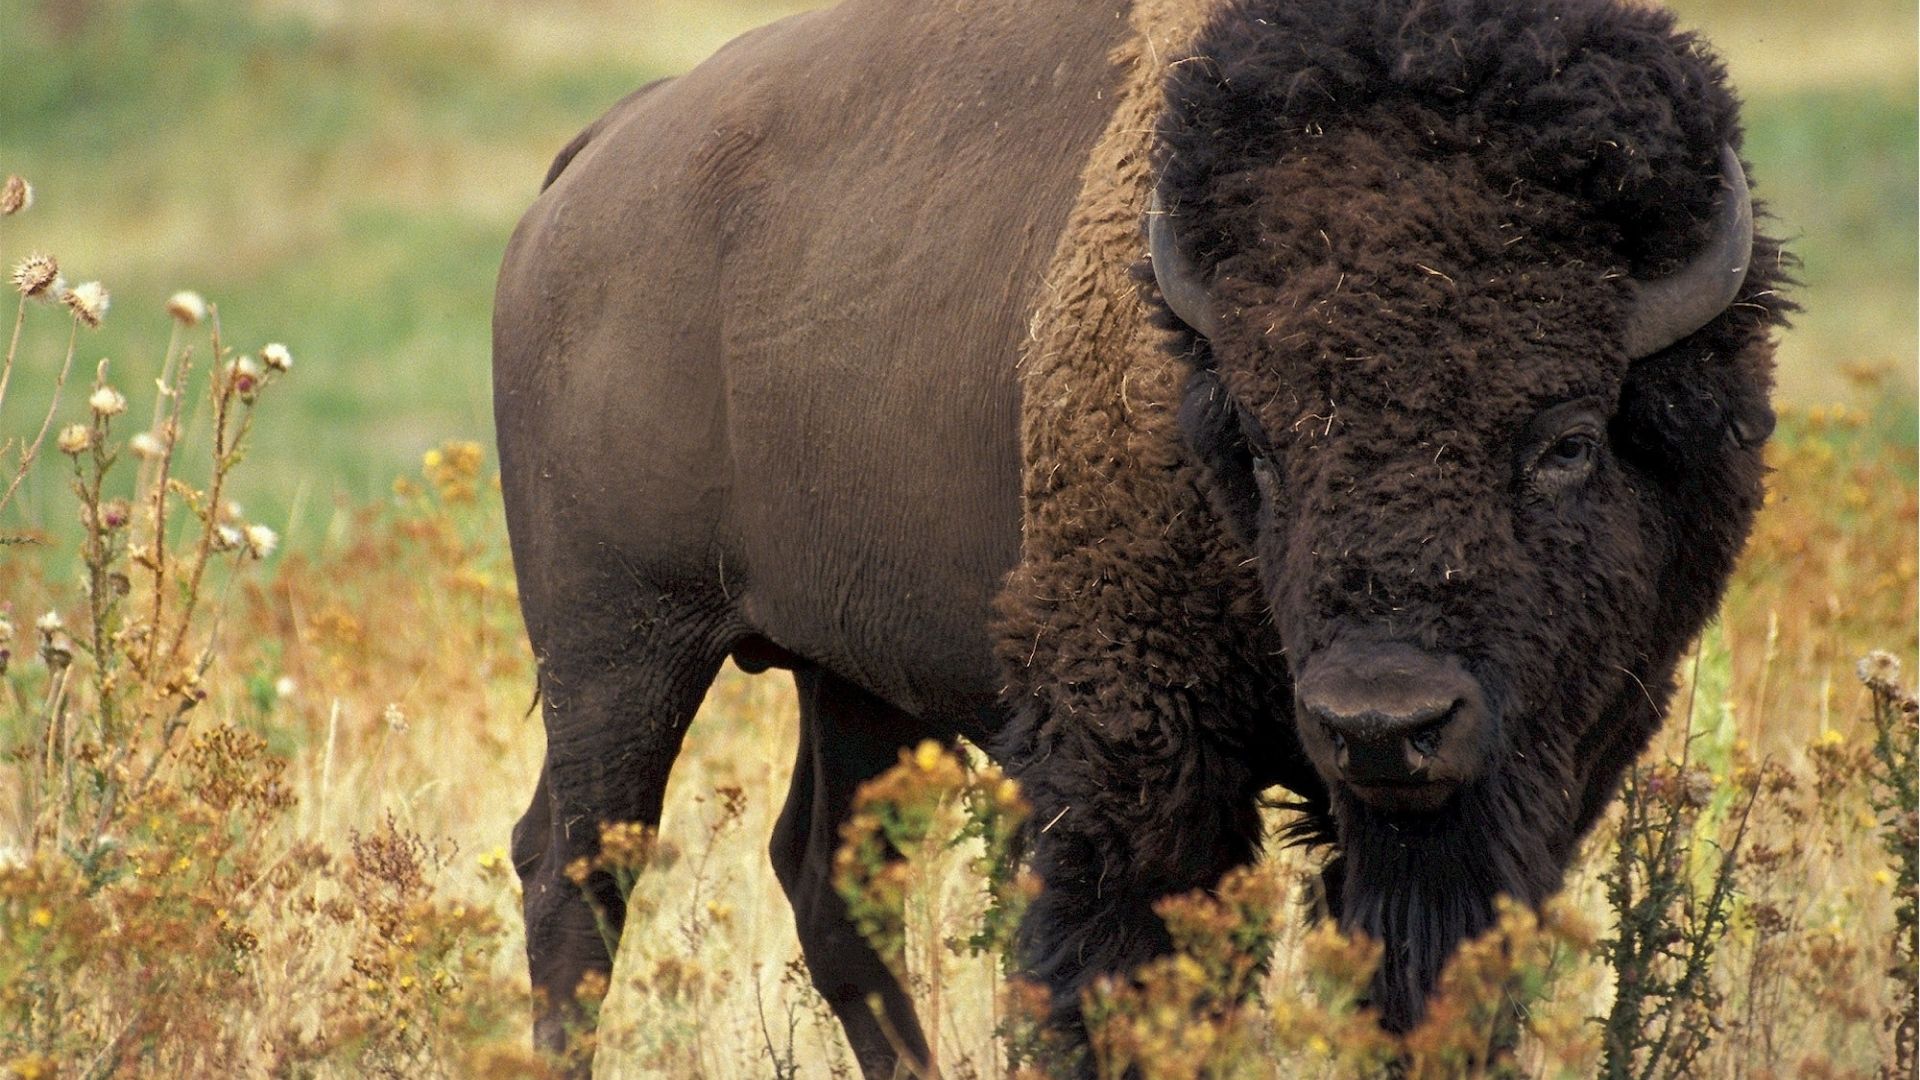 A buffalo standing in a field.